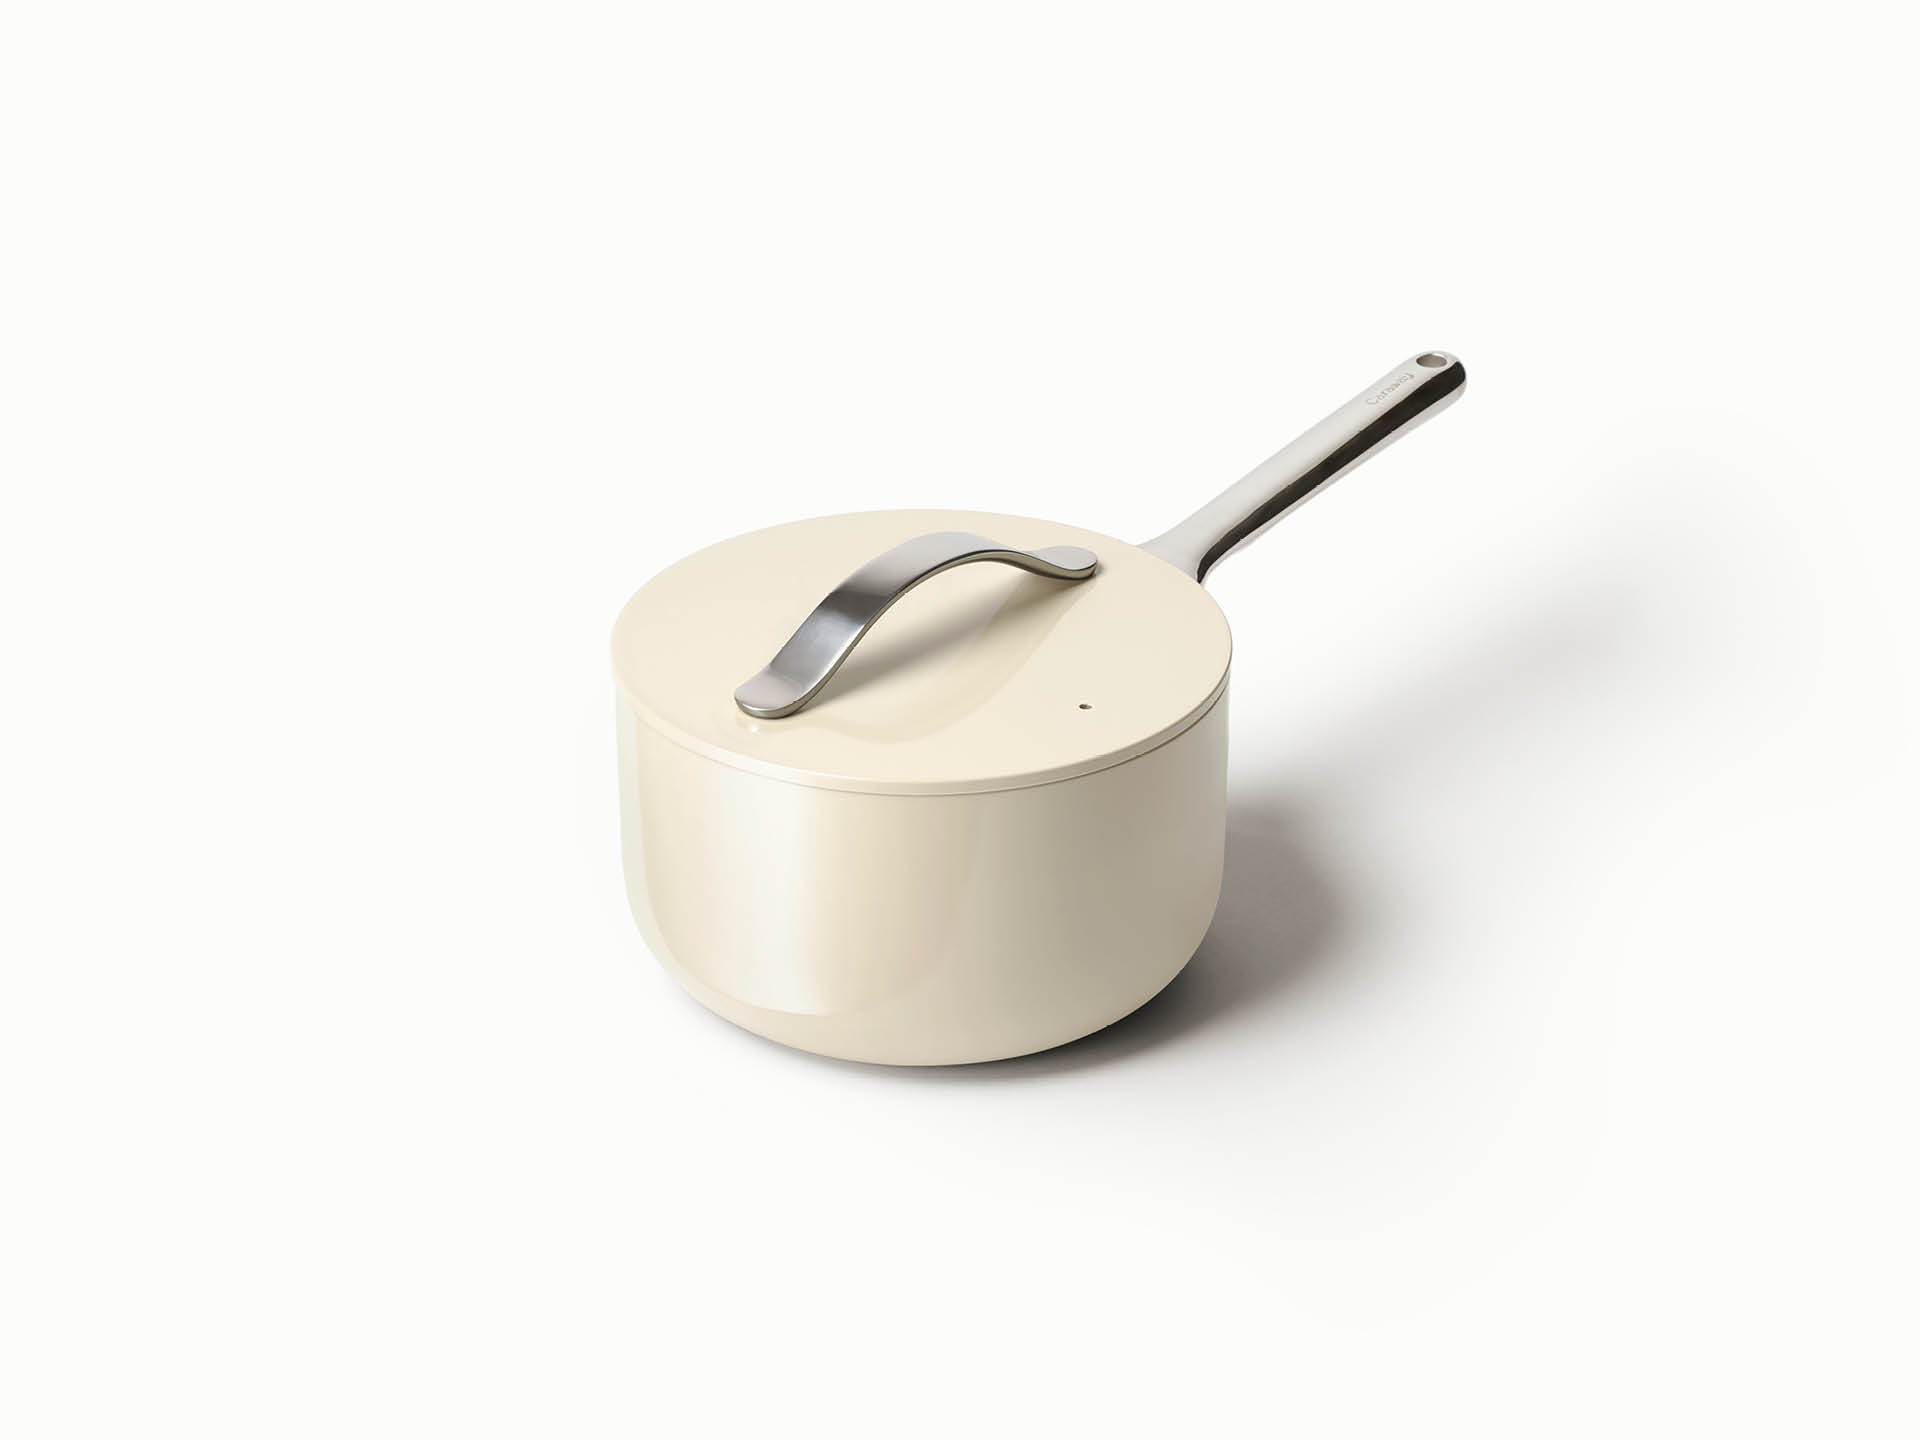 Caraway Home Non-Stick Ceramic Cookware Set, 7-Piece - Cream